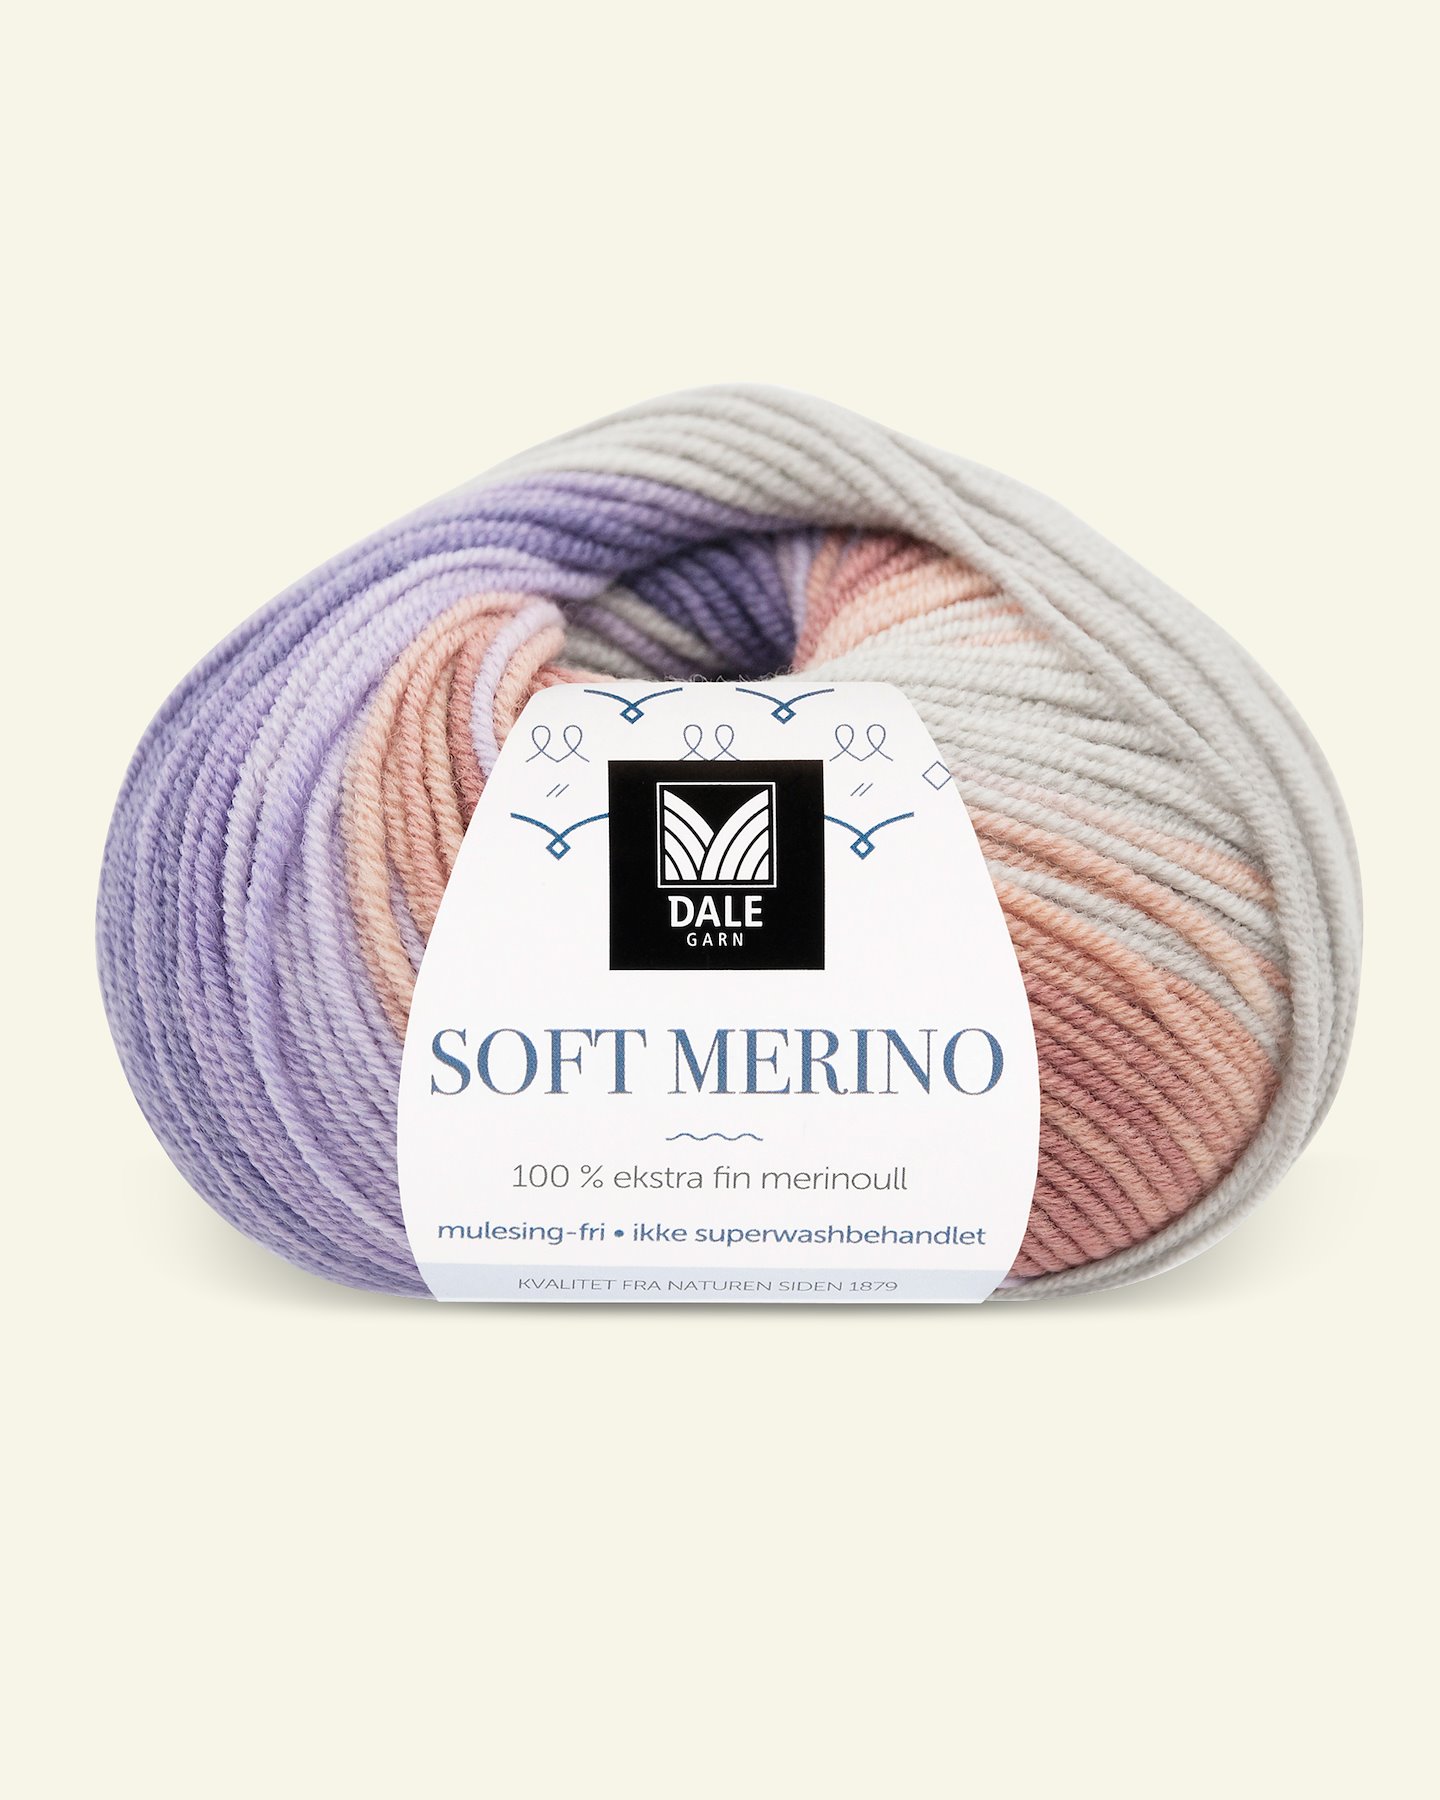 Dale Garn, 100% extra fine merino wool yarn, "Soft Merino", purple printed 90001222_pack